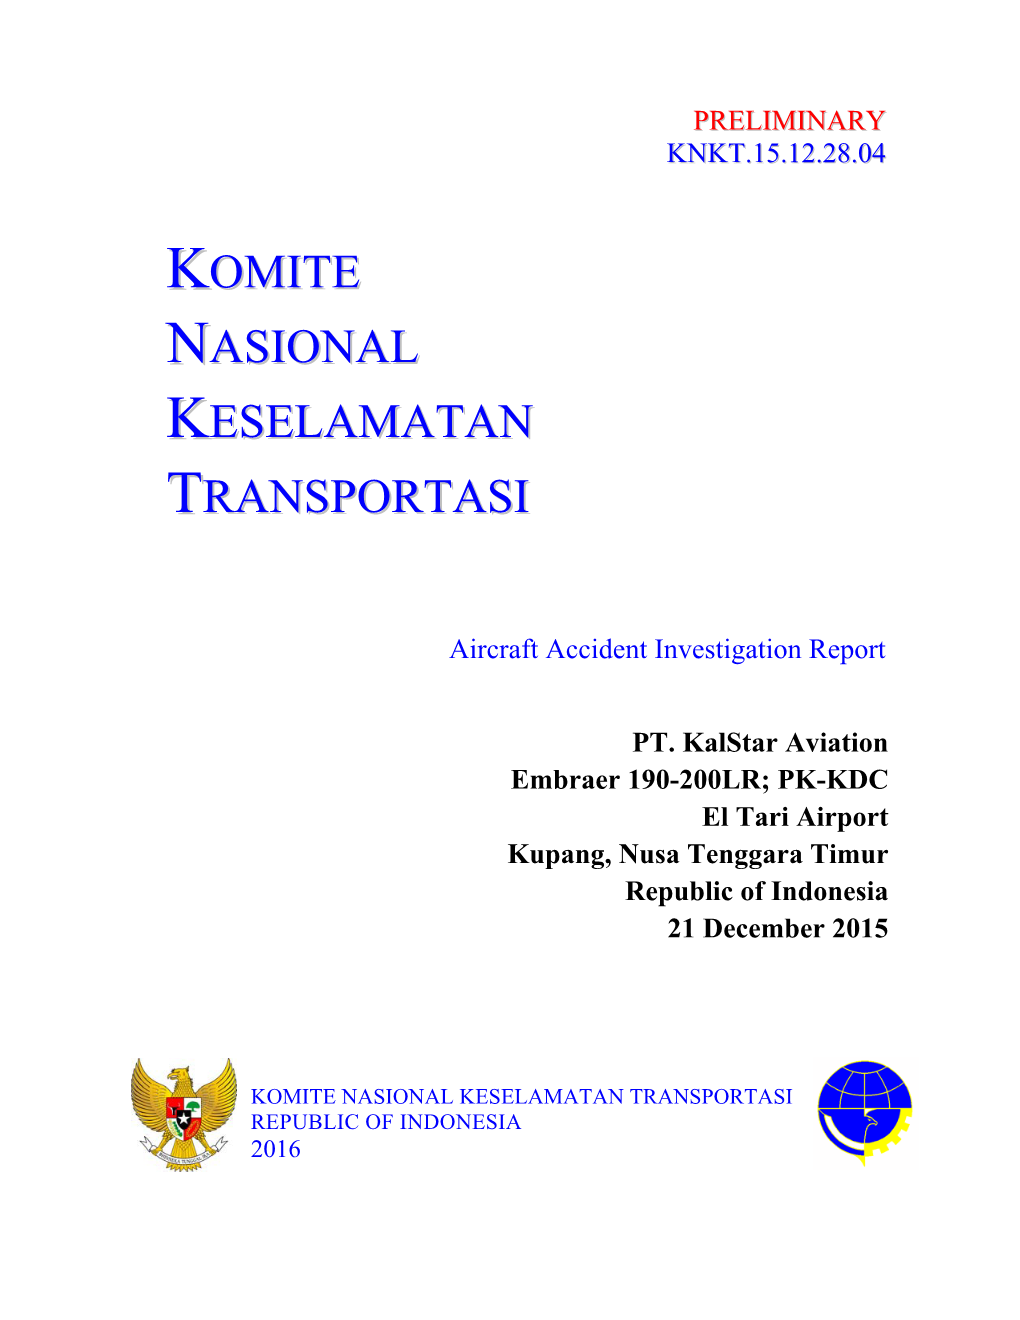 PK-KDC Preliminary Report